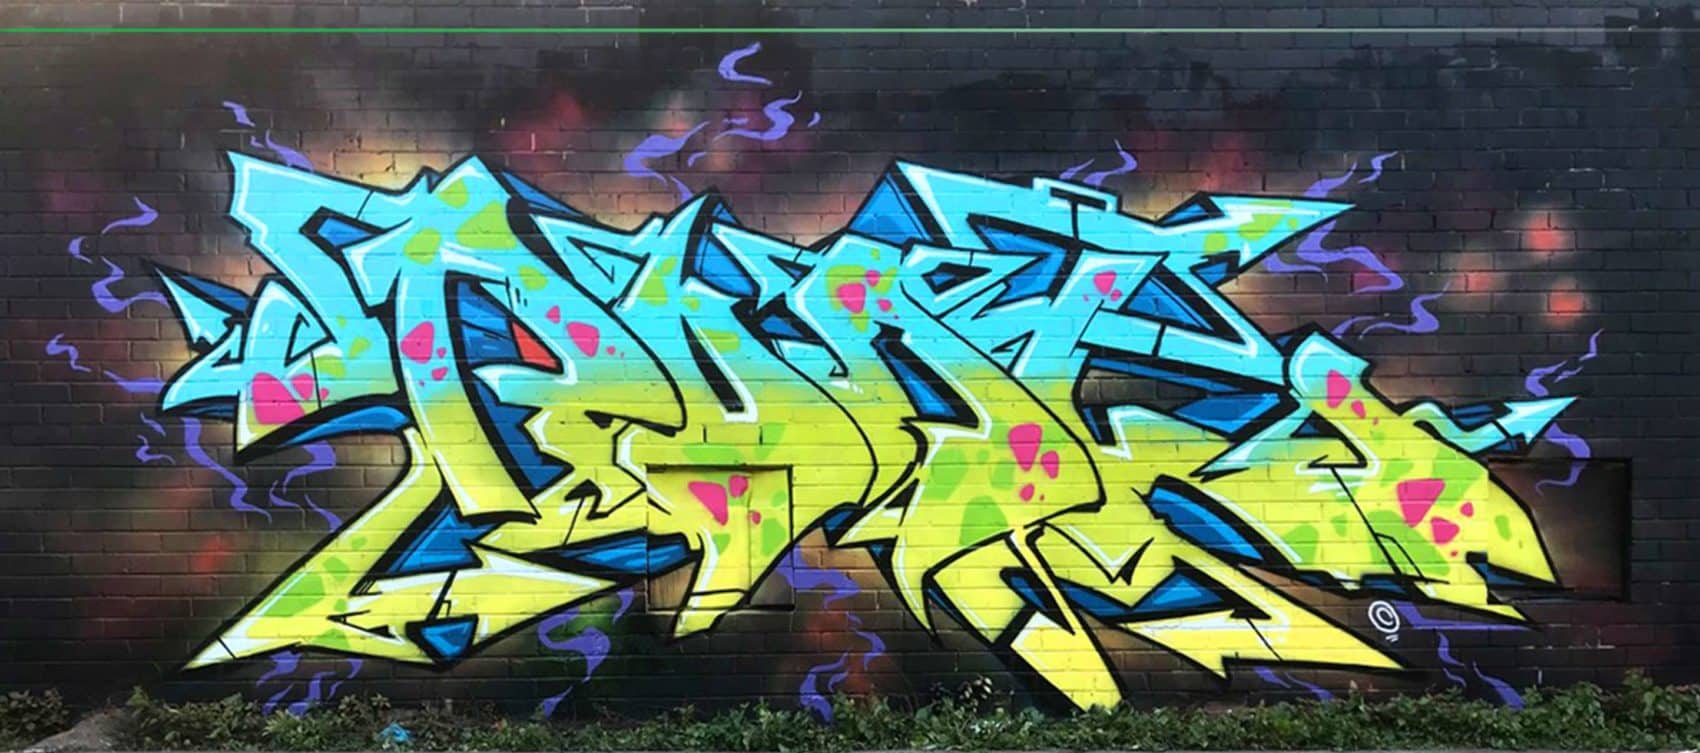 Graffiti artist Pudl from Sydney